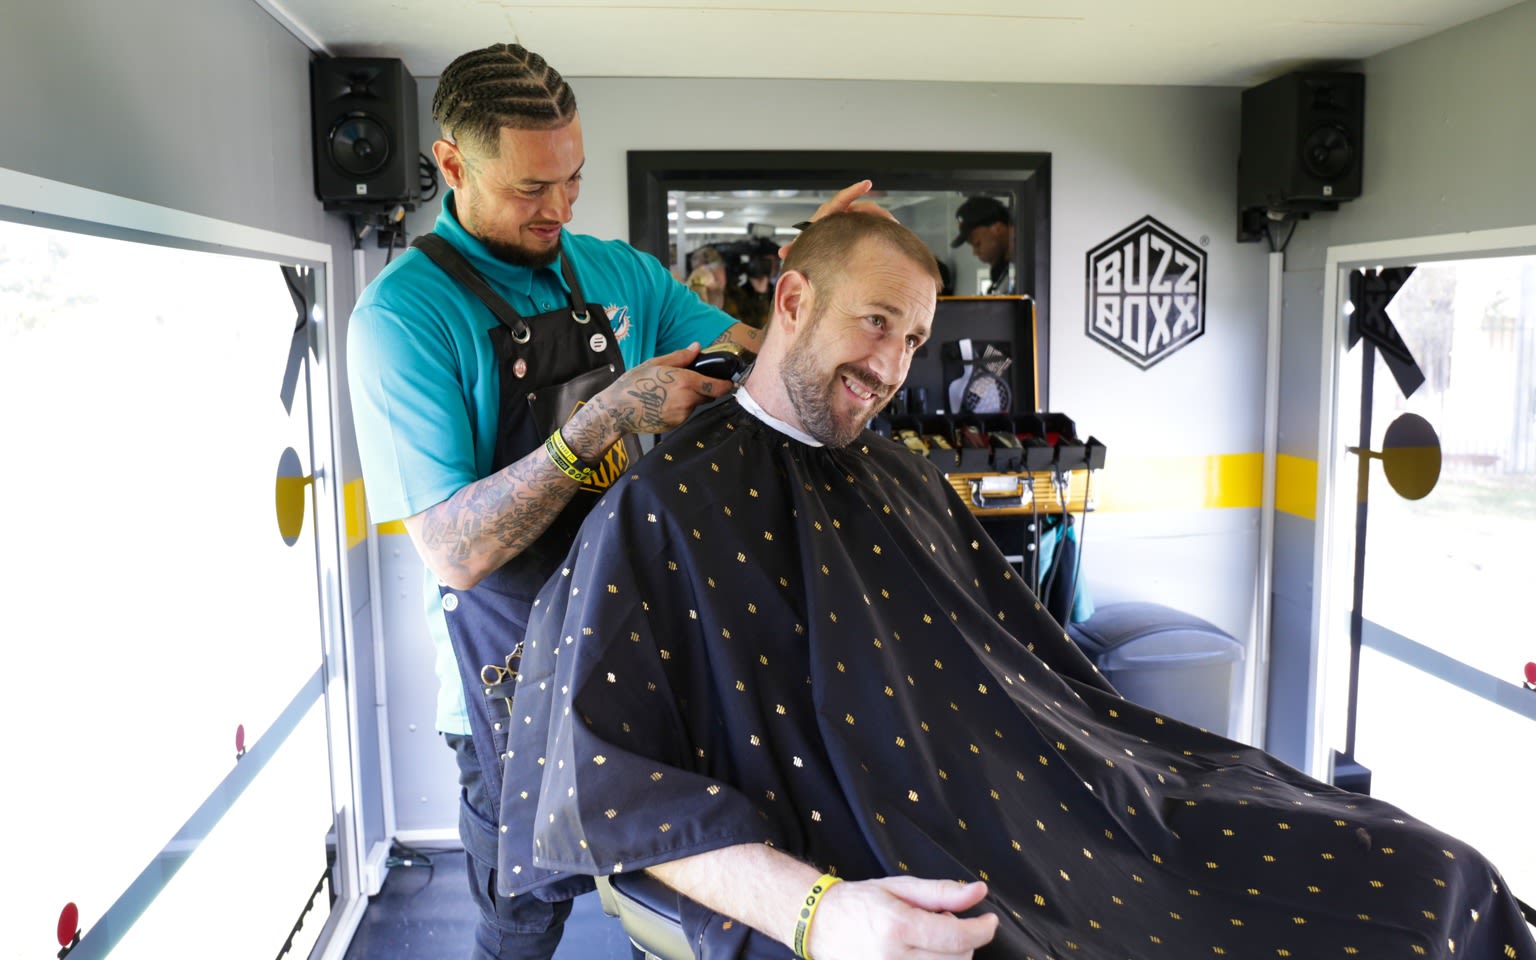 A man gets his hair cut on Virgin Trains' Buzz Boxx